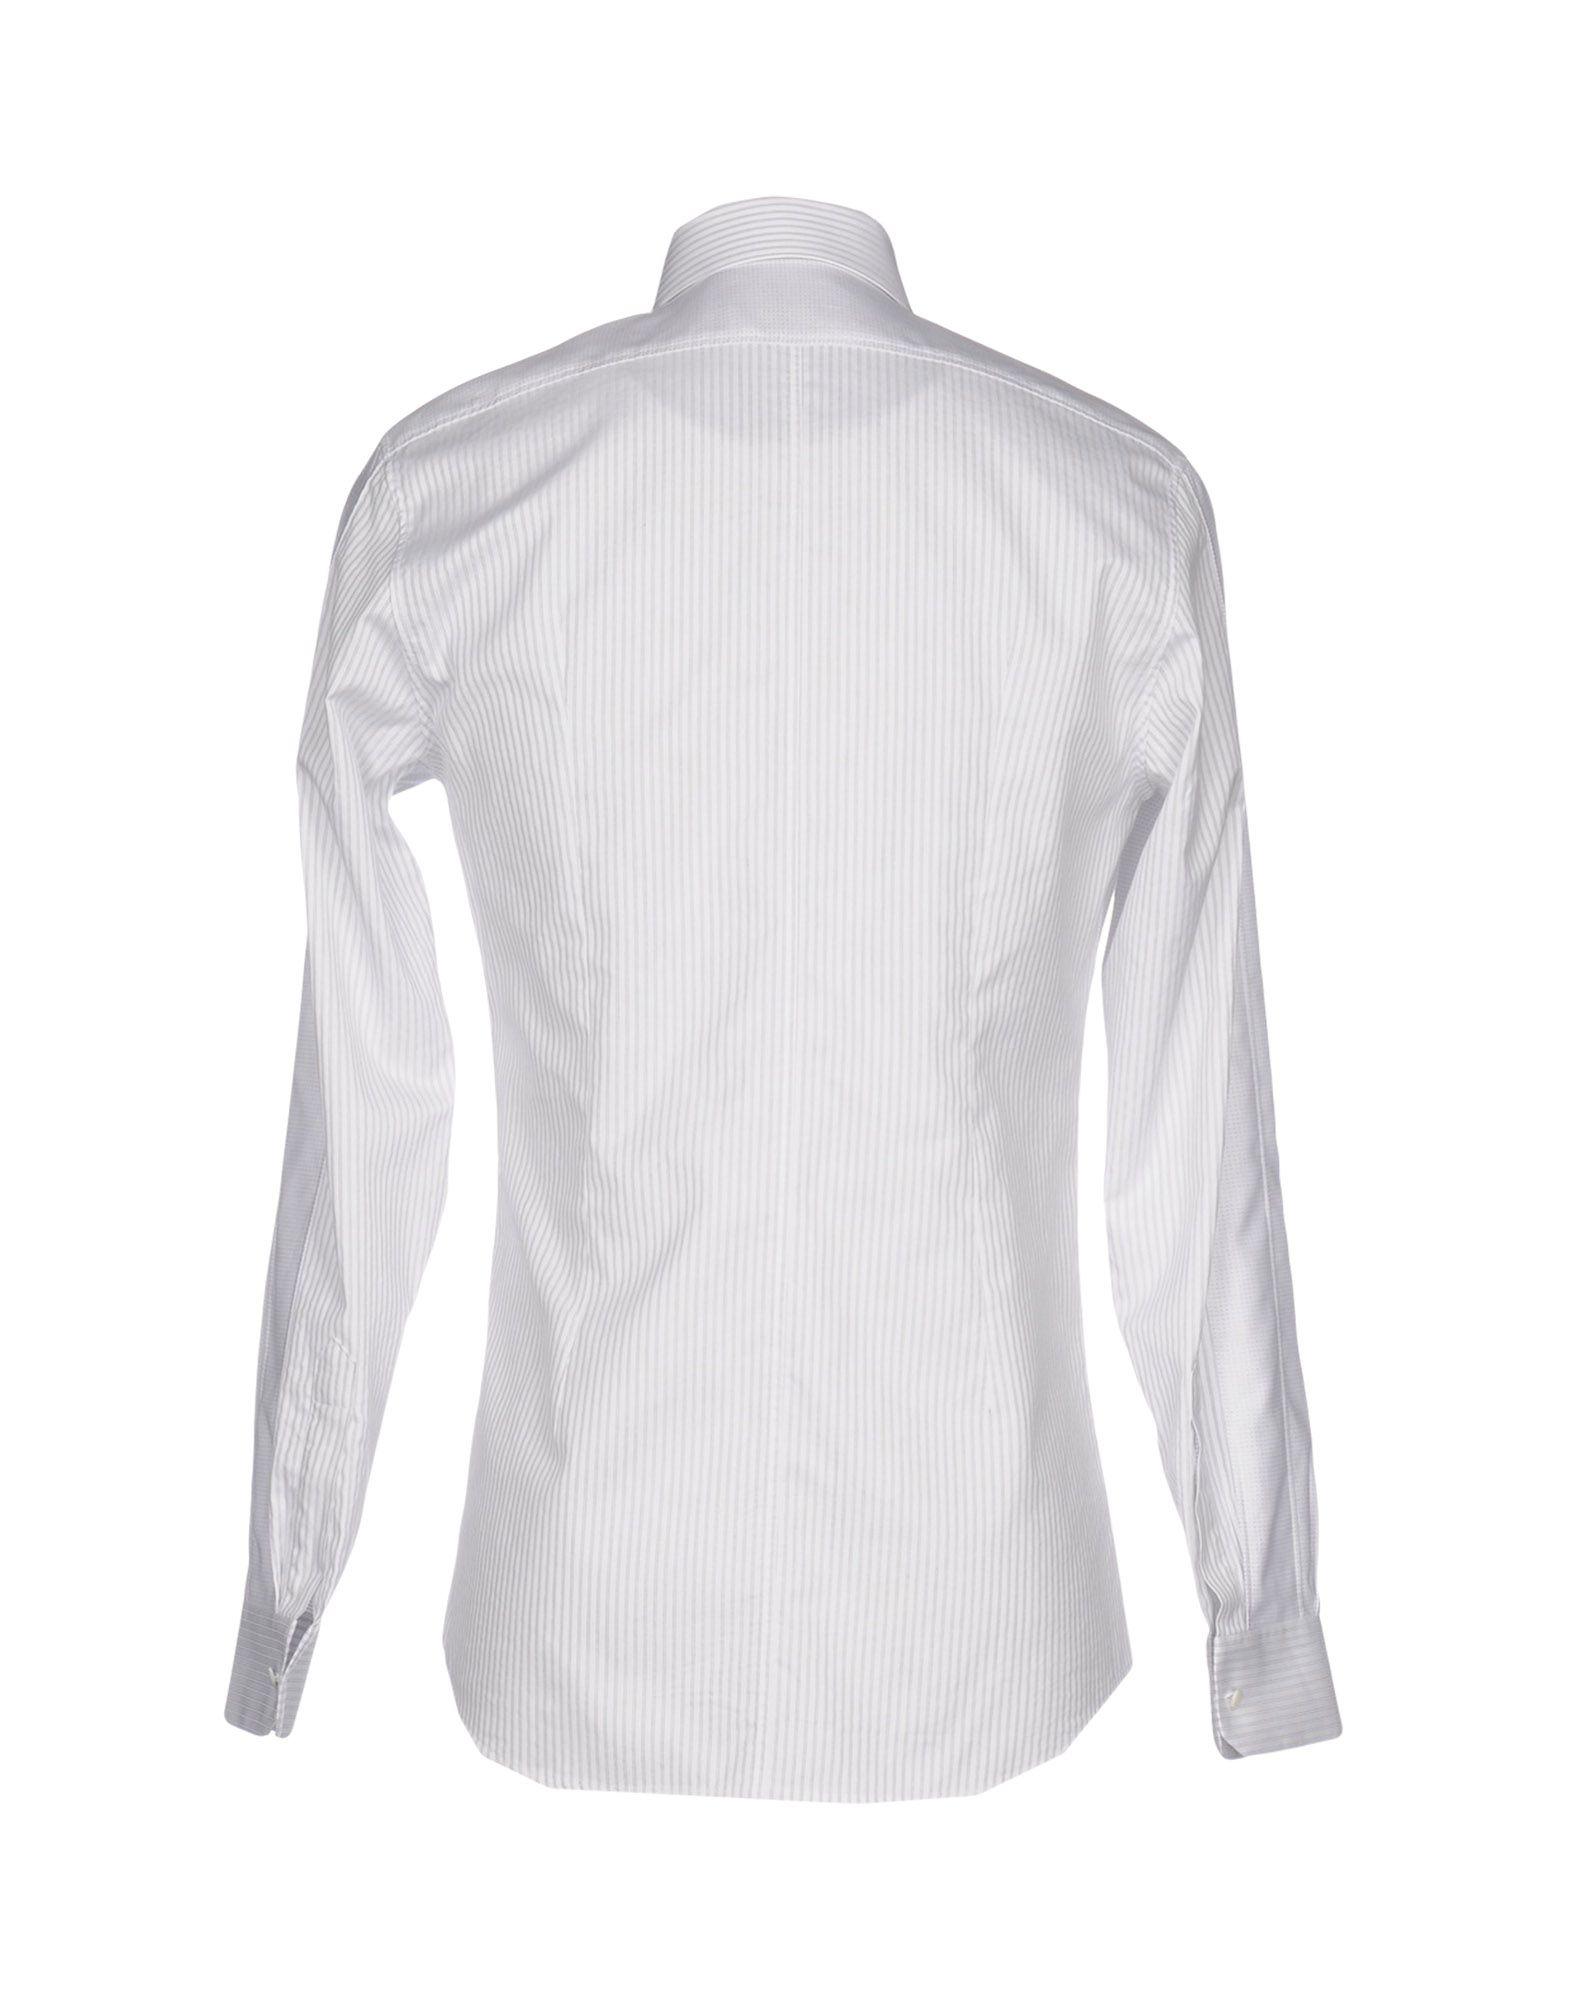 Lyst - Dolce & Gabbana Shirt in White for Men